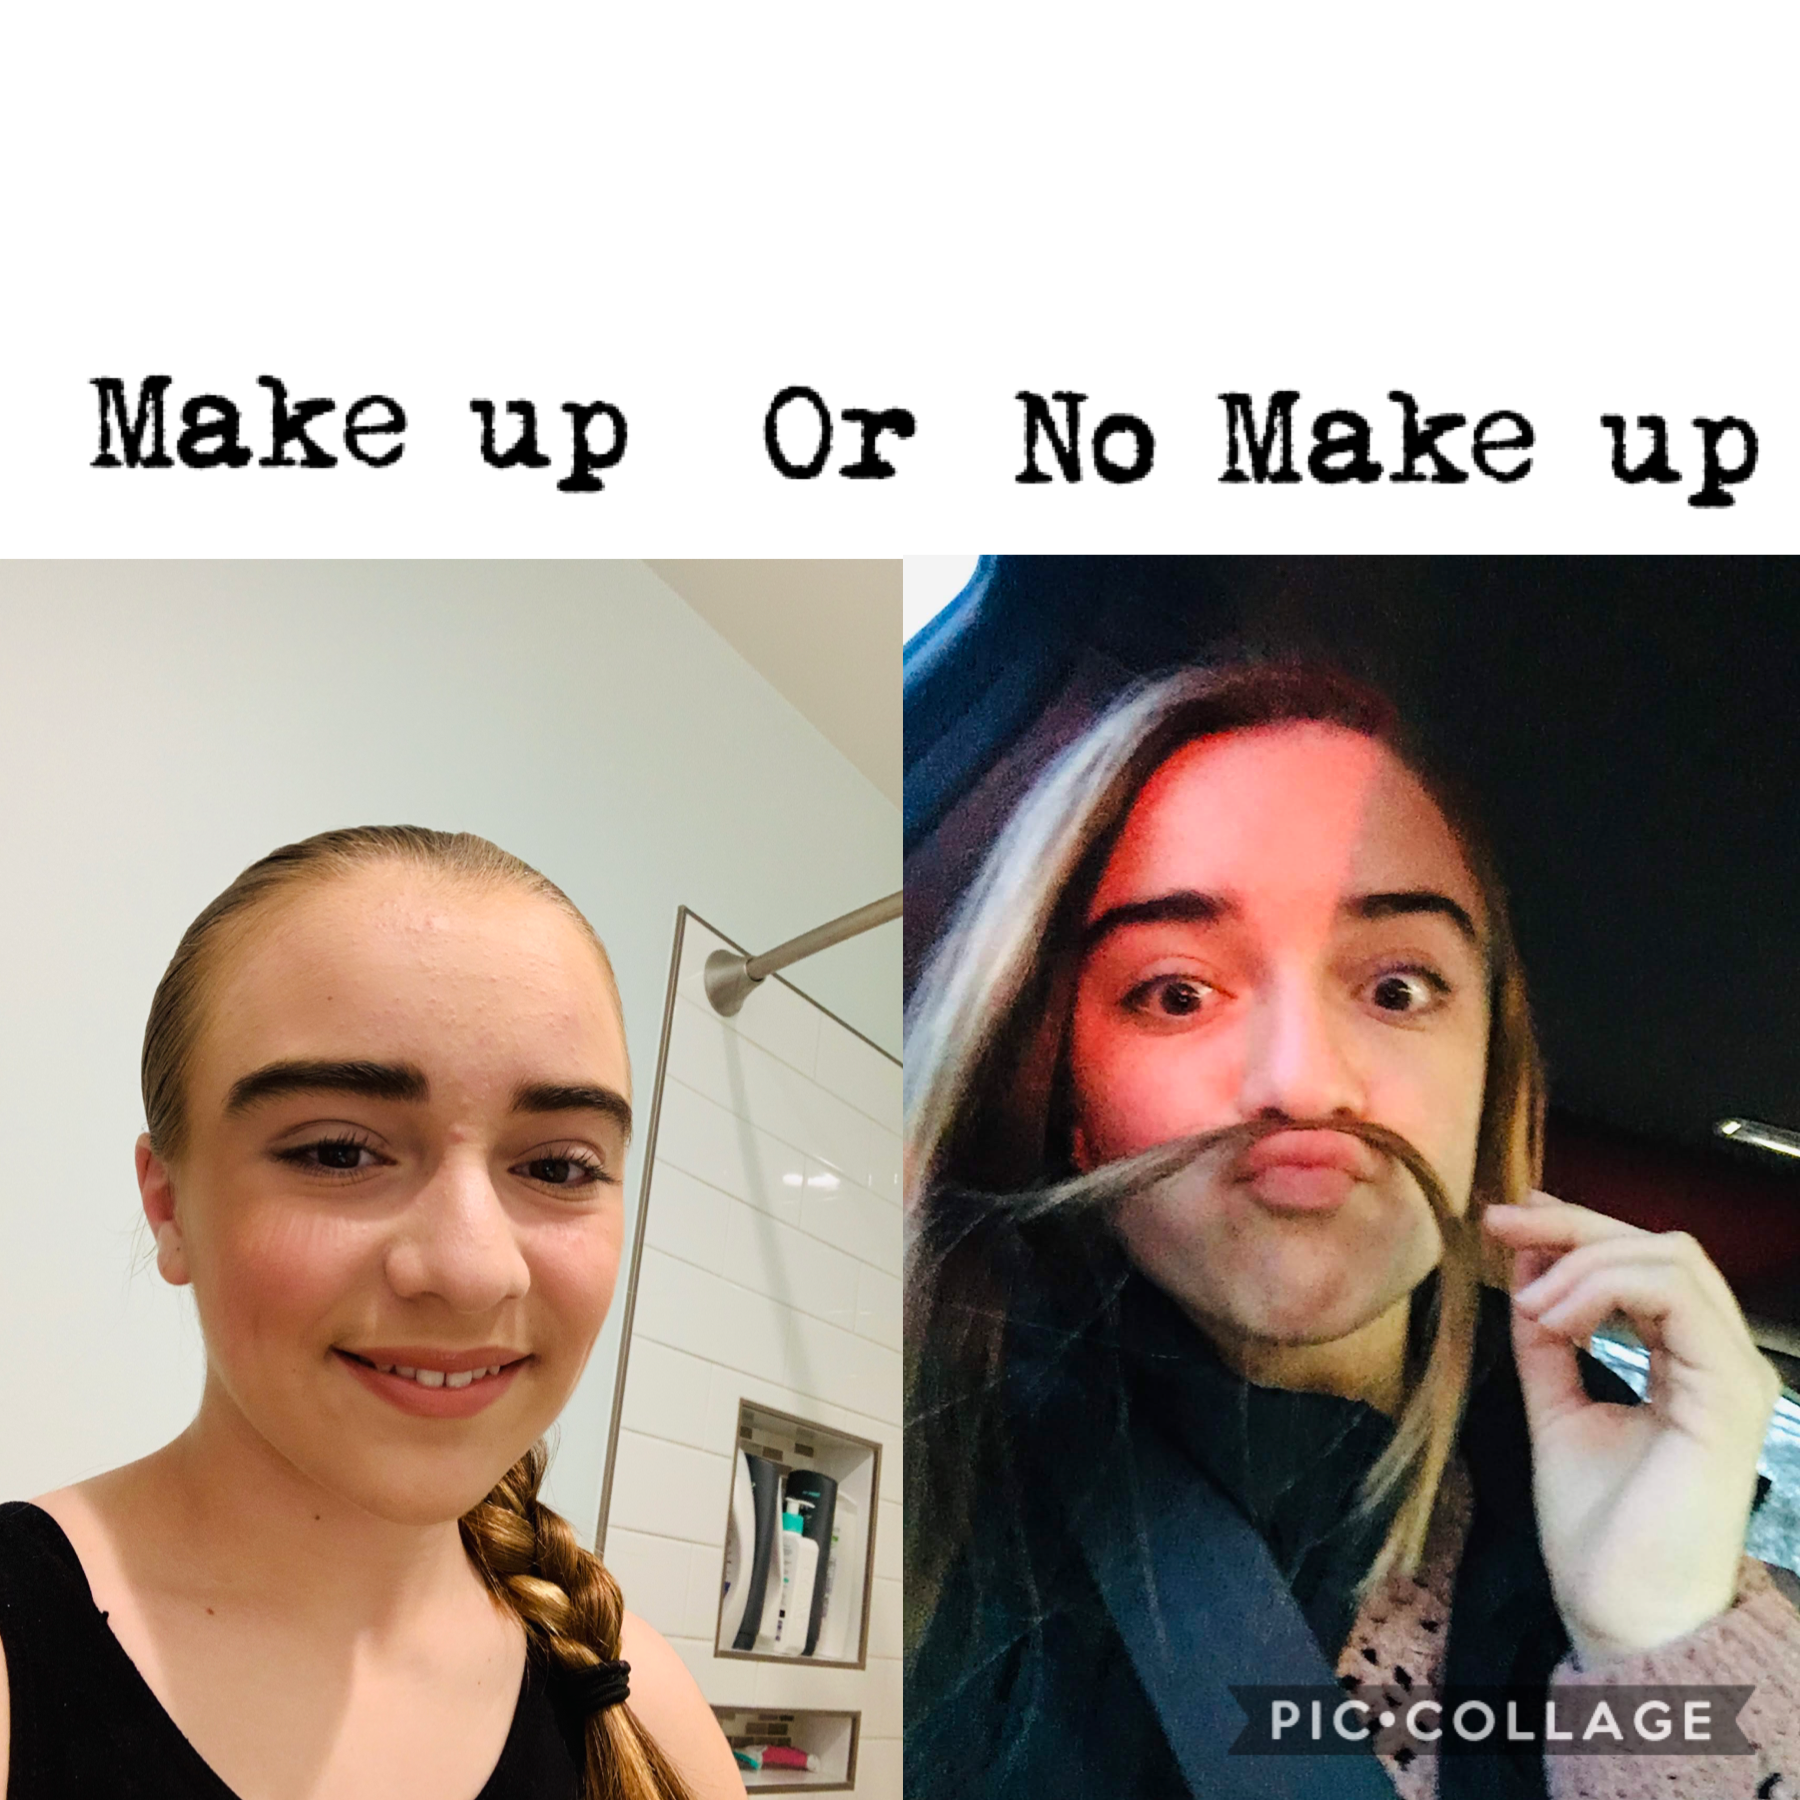 Make up or no make up